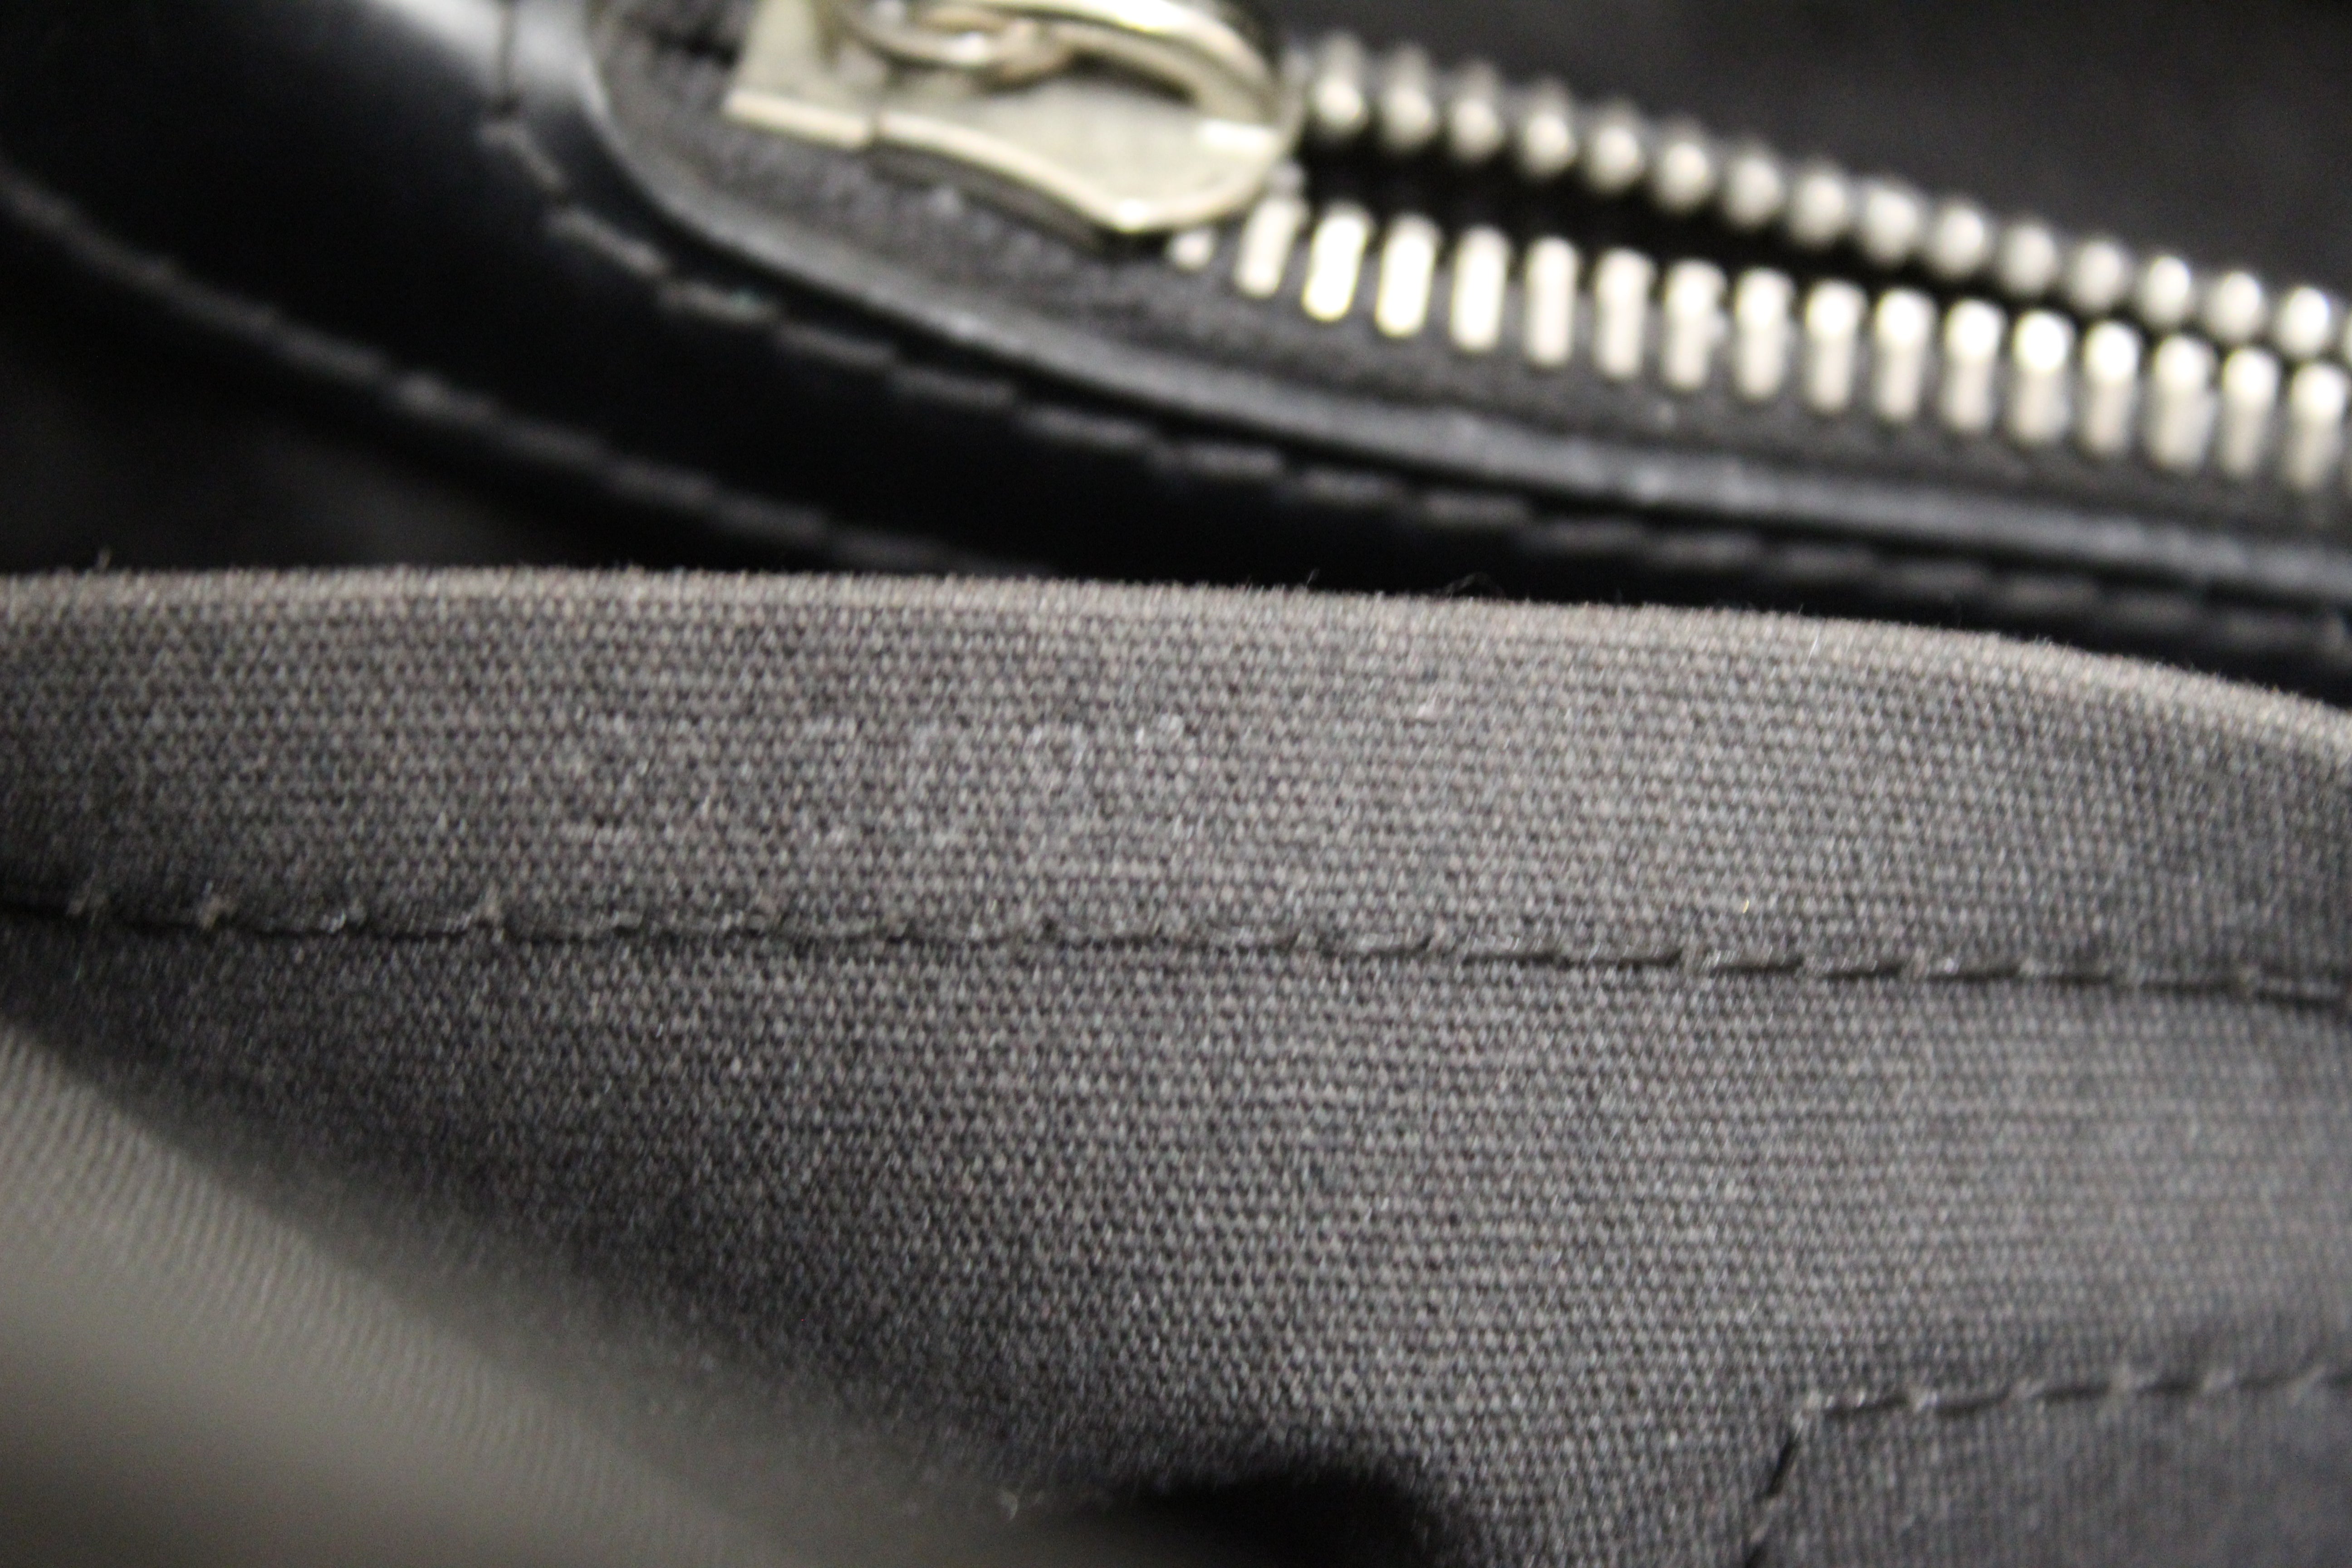 Authentic Louis Vuitton Black Epi Leather Passy PM Handbag